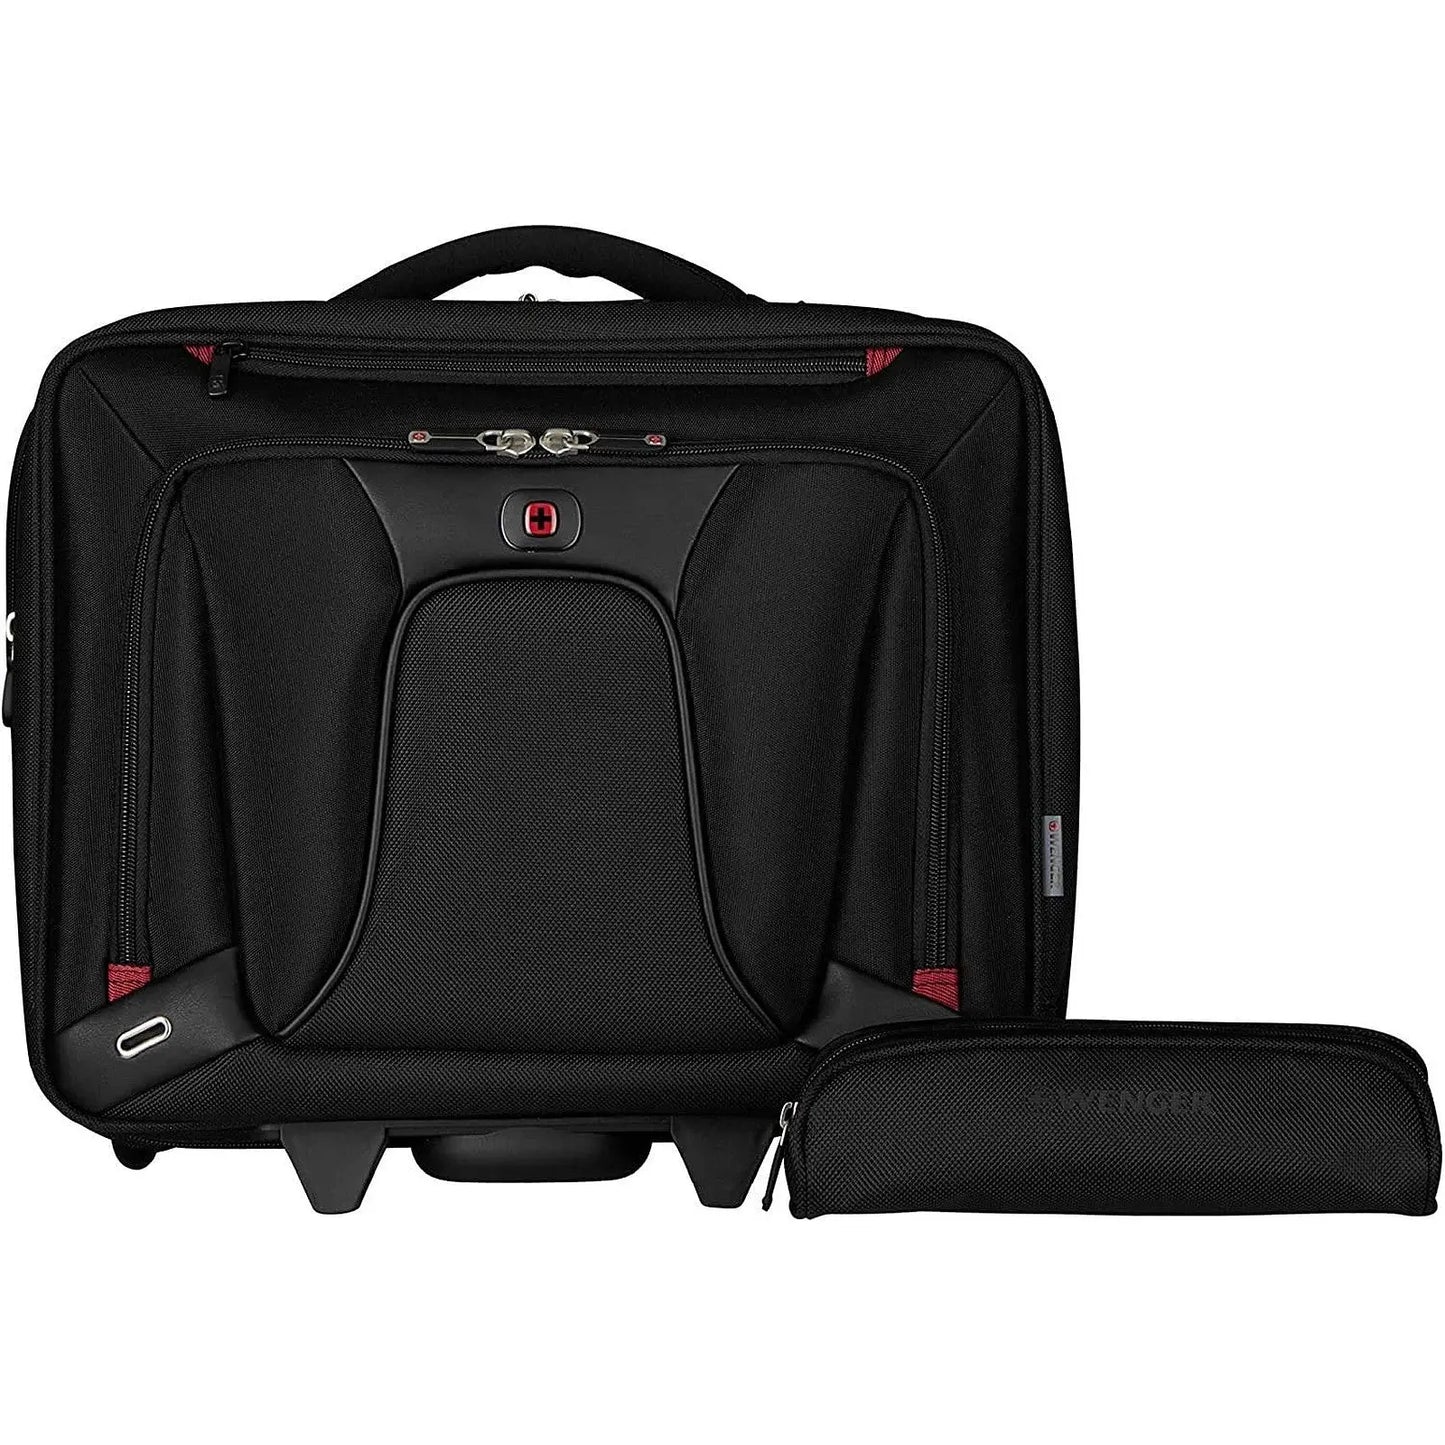 Laptop Bag Wenger - Valise à roulettes 20 litres avec compartiment pour ordinateur portable 16? et Tablette 10? noir Port Designs